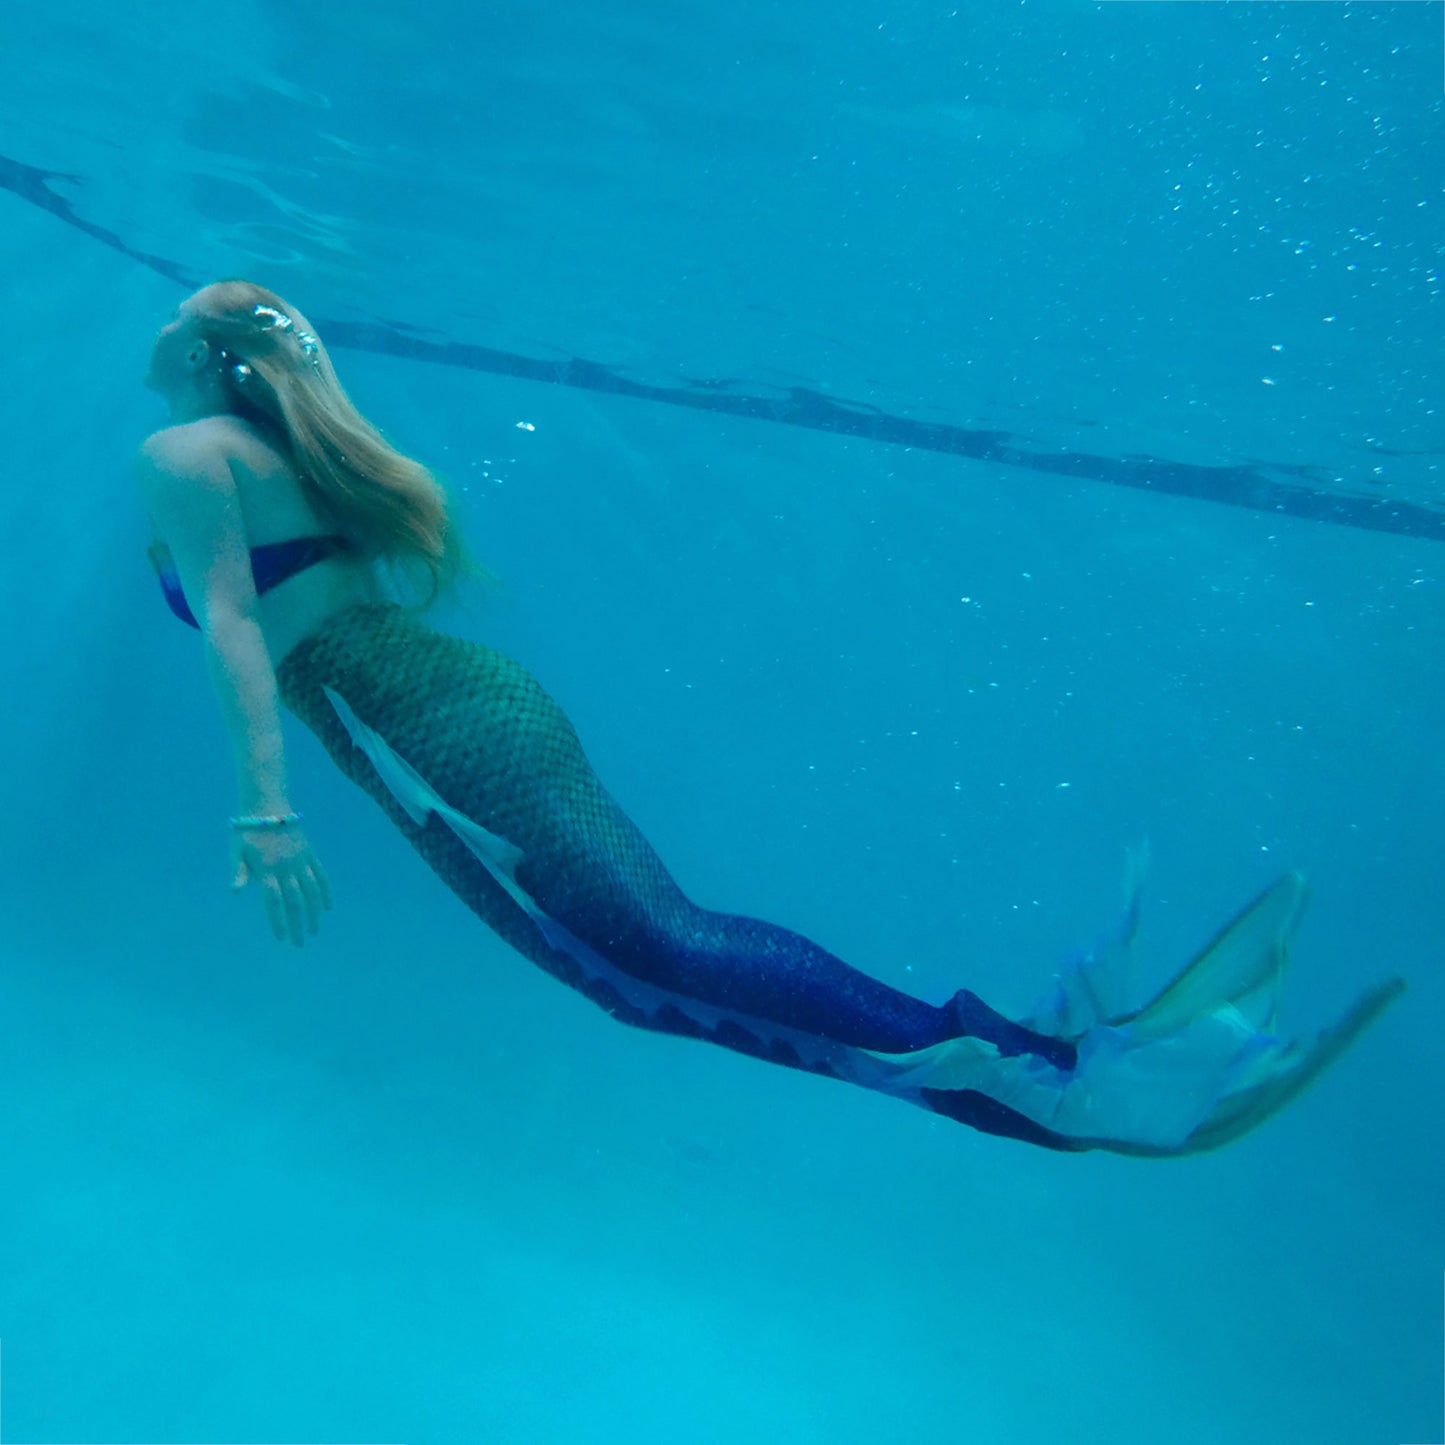 Seafoam Serenade Atlantis Mermaid Tail